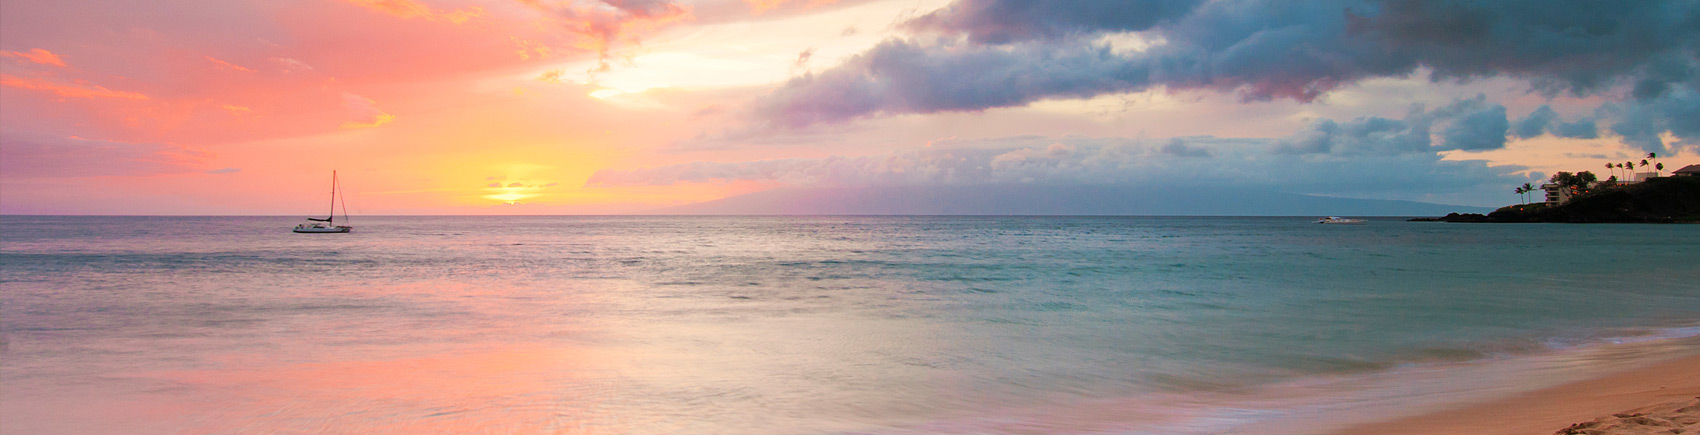 Maui sunset image